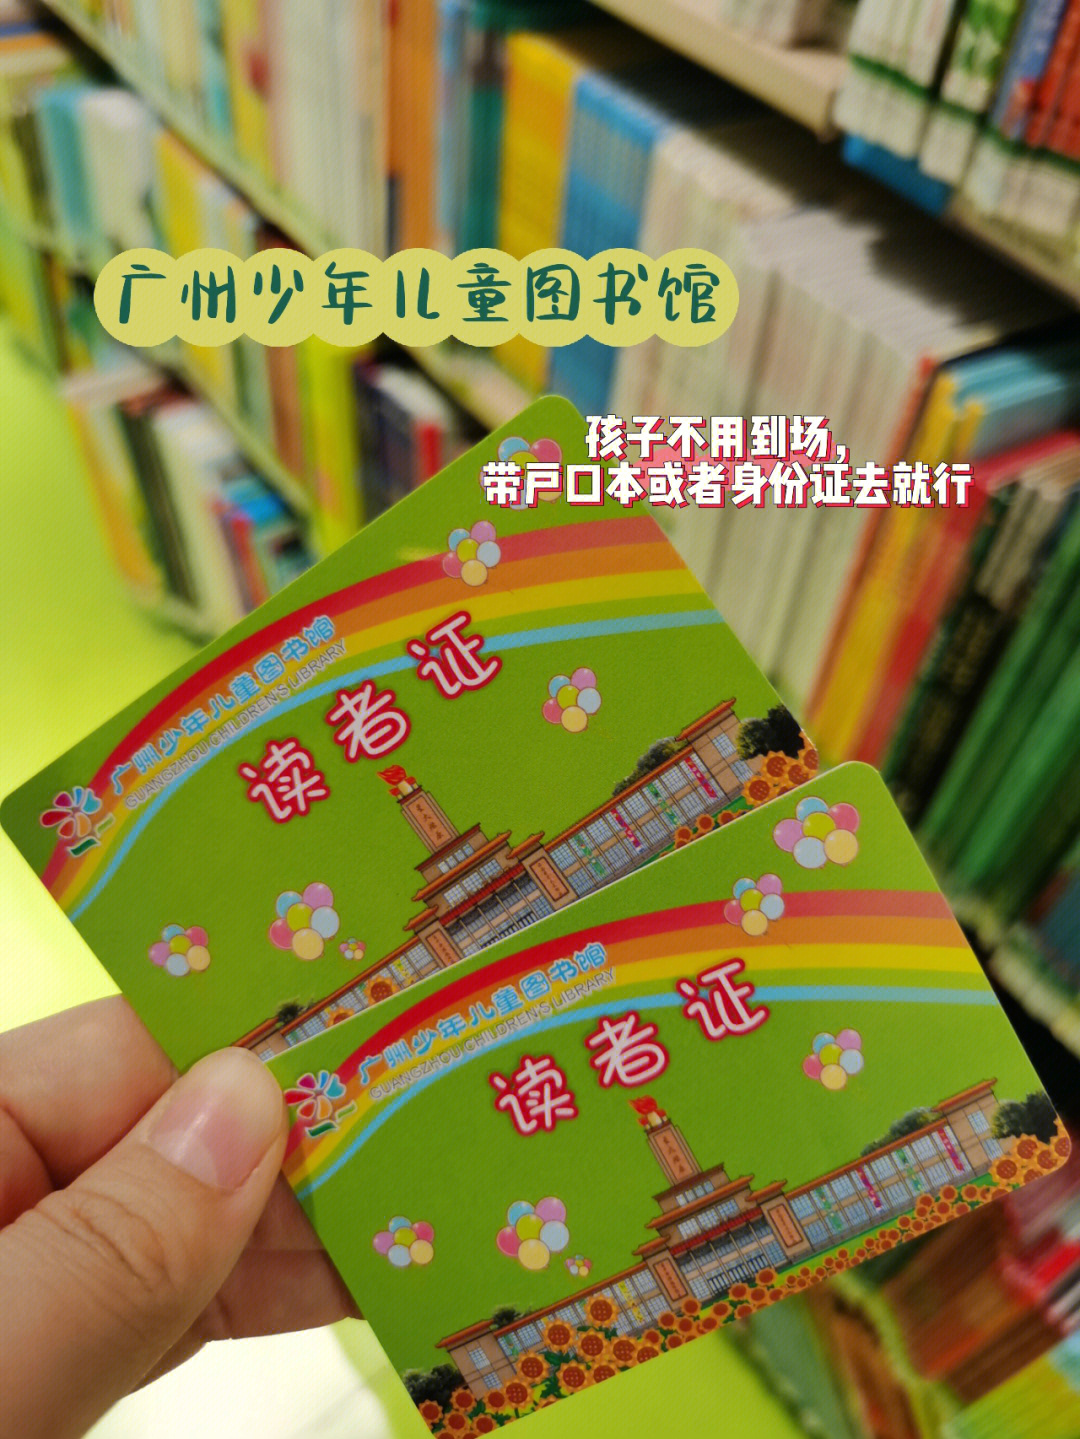 去广州市少儿儿童图书馆办证啦